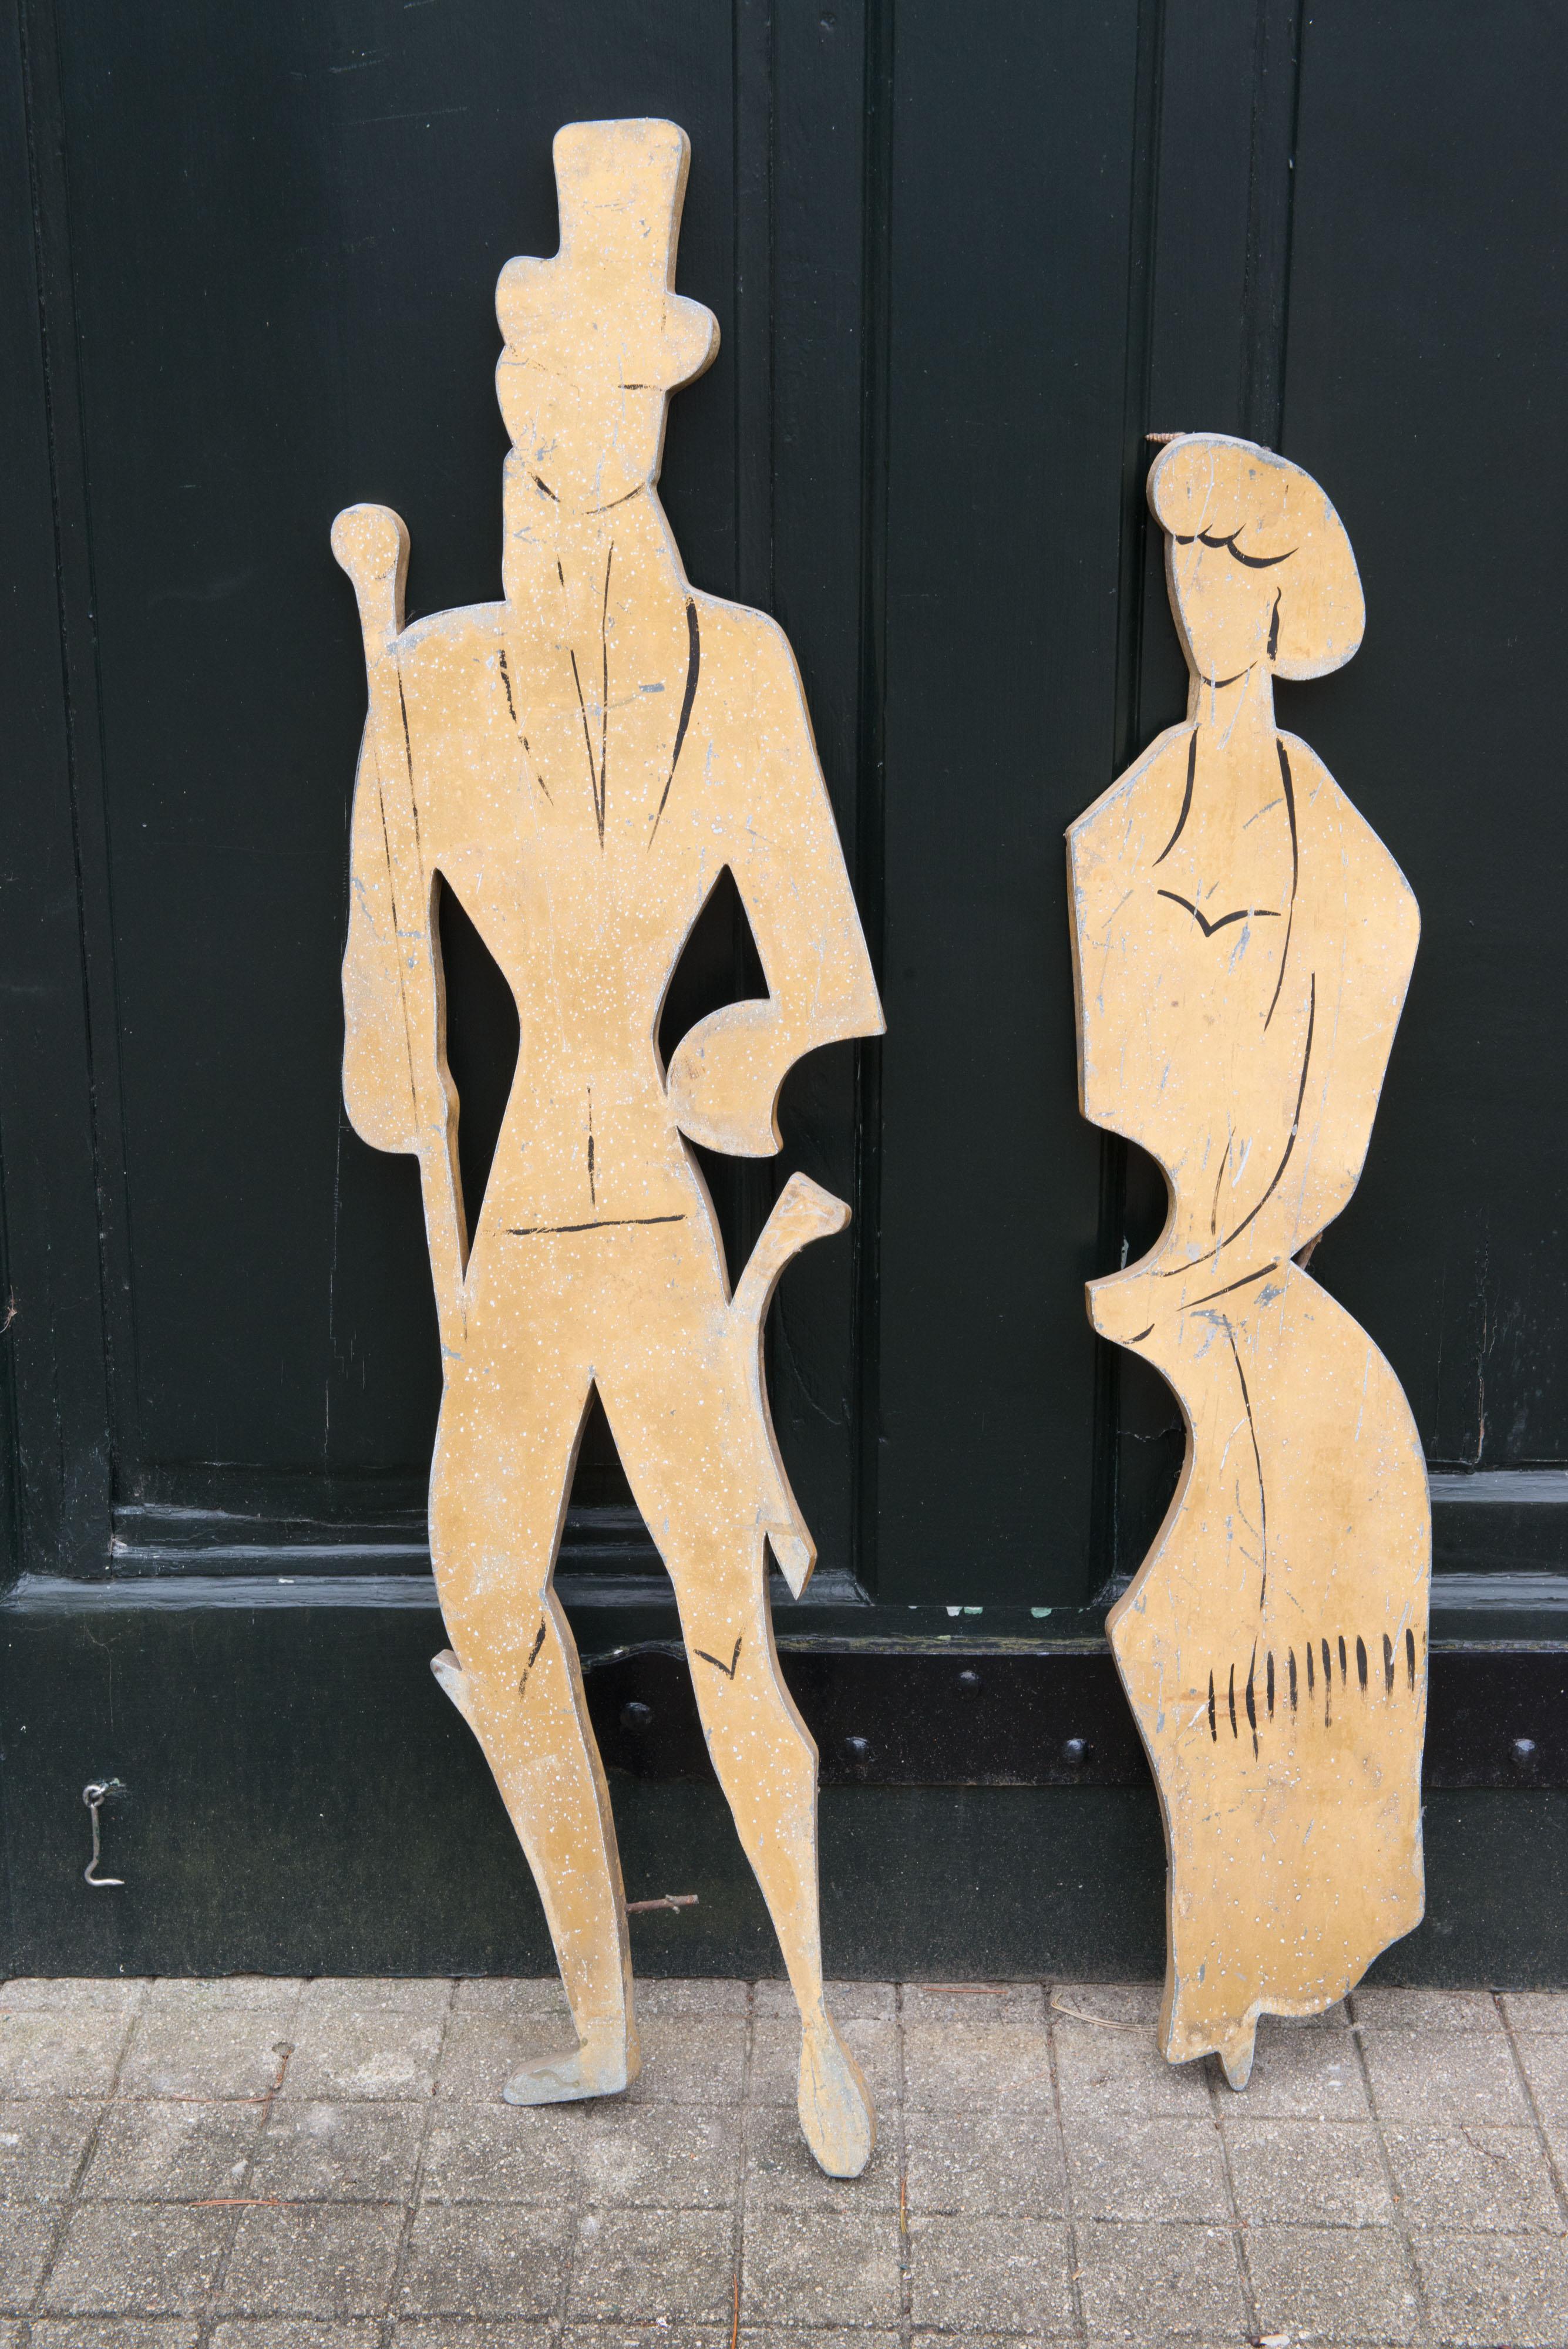 Paire de figurines de style années 1890 représentant un homme avec un chapeau haut de forme et une canne et une femme svelte, en métal, de France.
La femme mesure 9